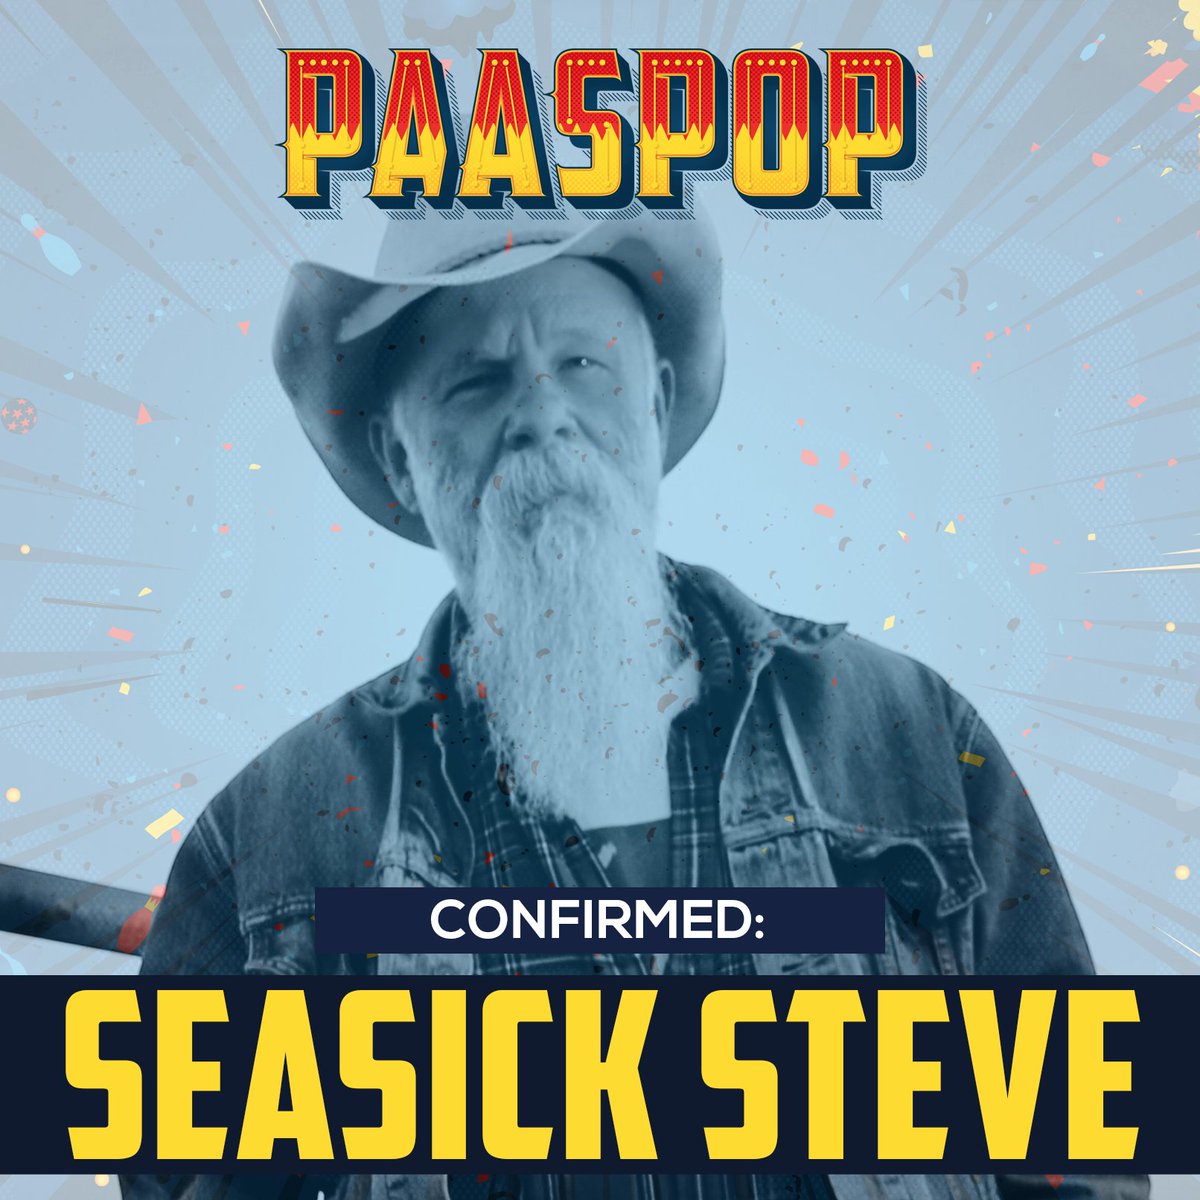 Hold on to your drinks, want @SeasickSteve komt met zijn driesnarige gitaar naar Paaspop! Line-up, tickets, & more: bit.ly/2mlNZHt